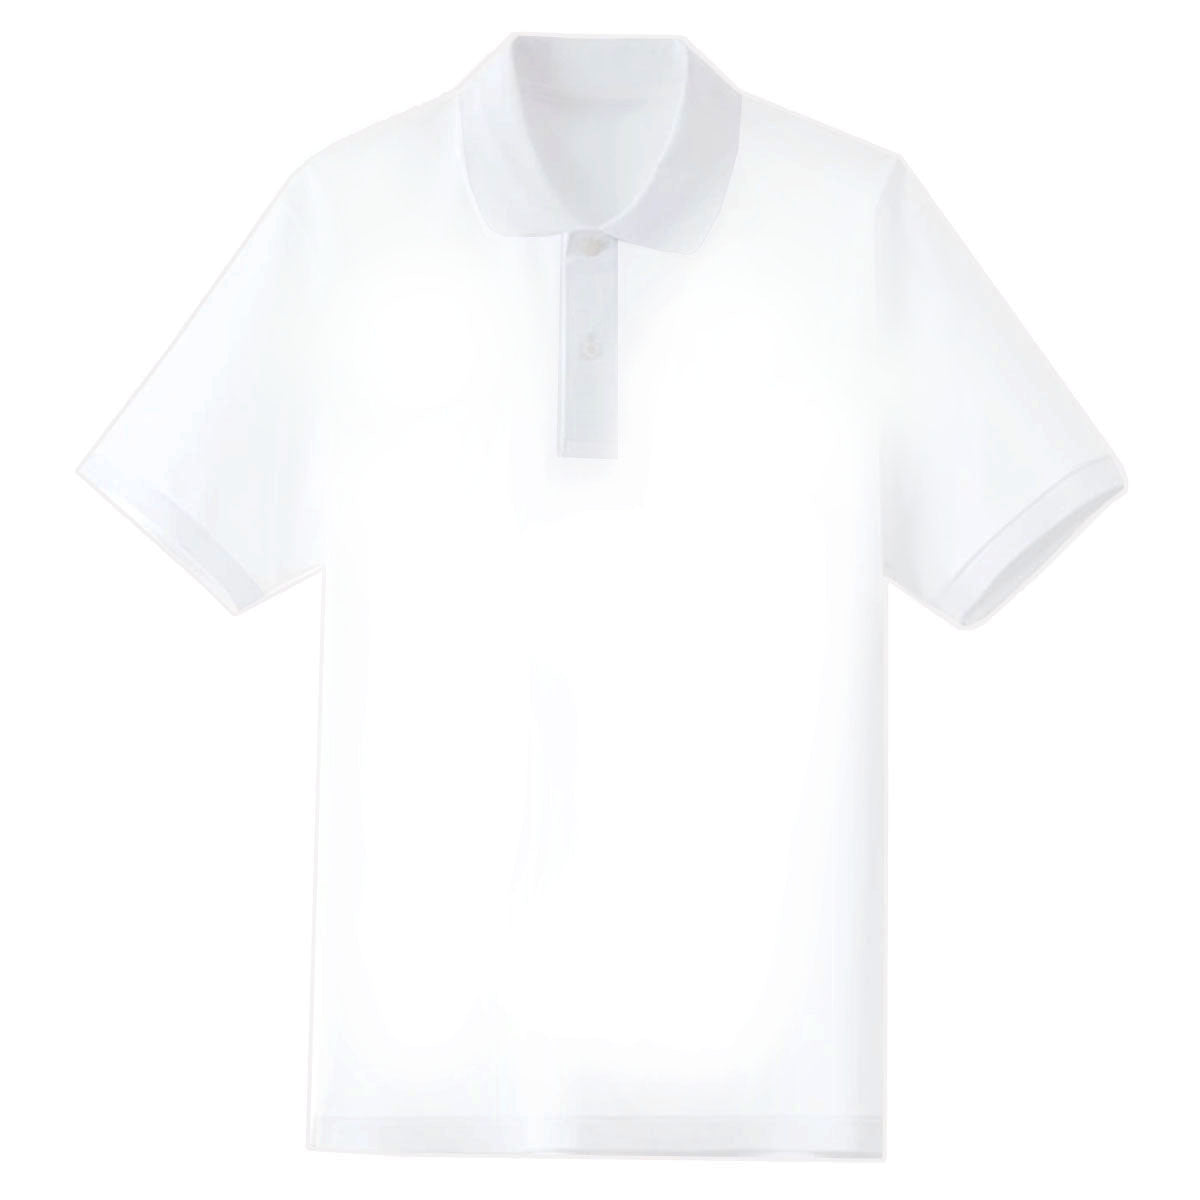 POL3 Personalised Unisex POLO SHIRT Short Sleeve White Clothing (One-sided )